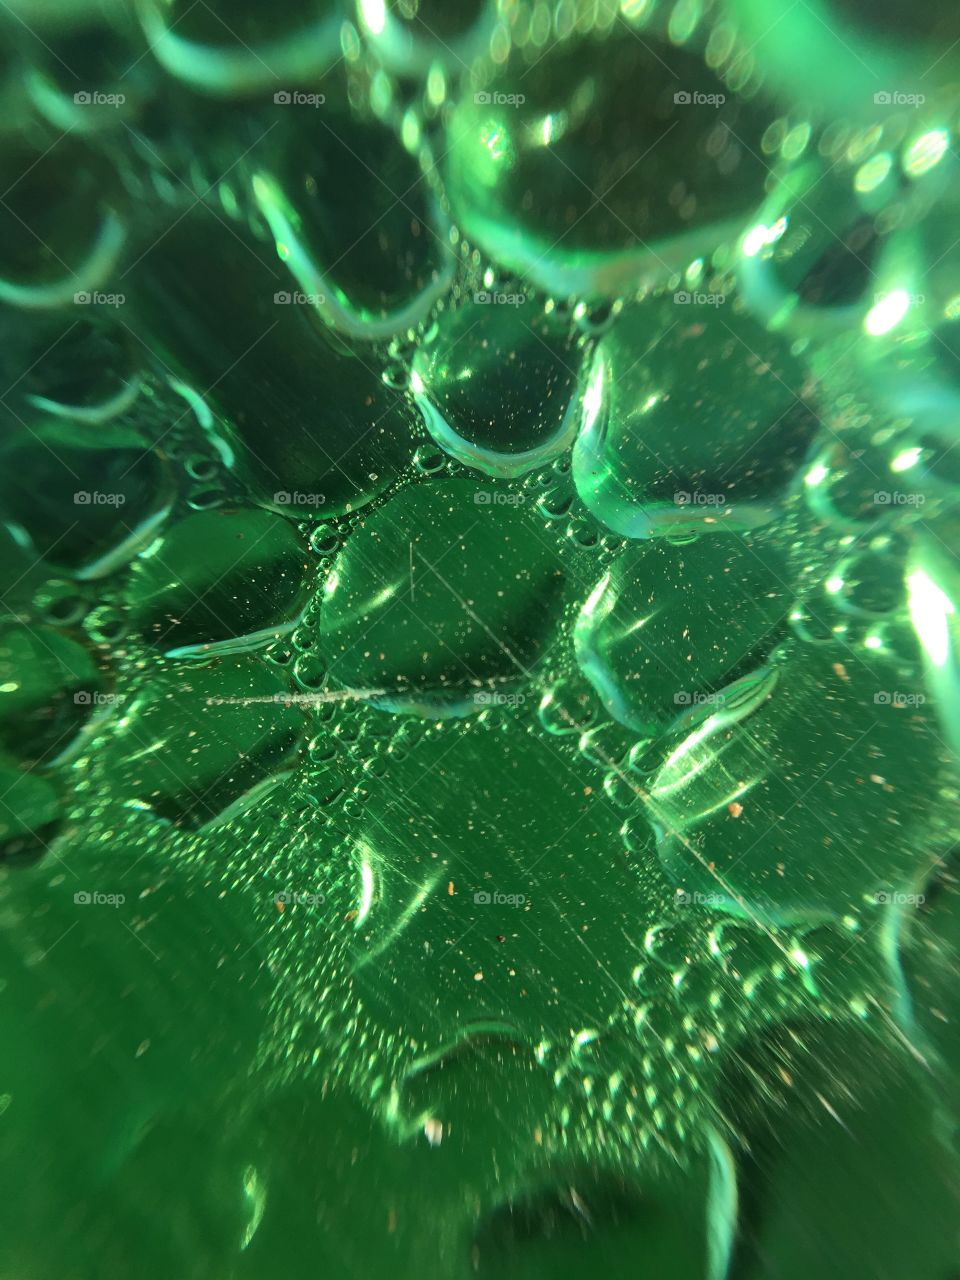 Macro water droplets on a green plastic bottle